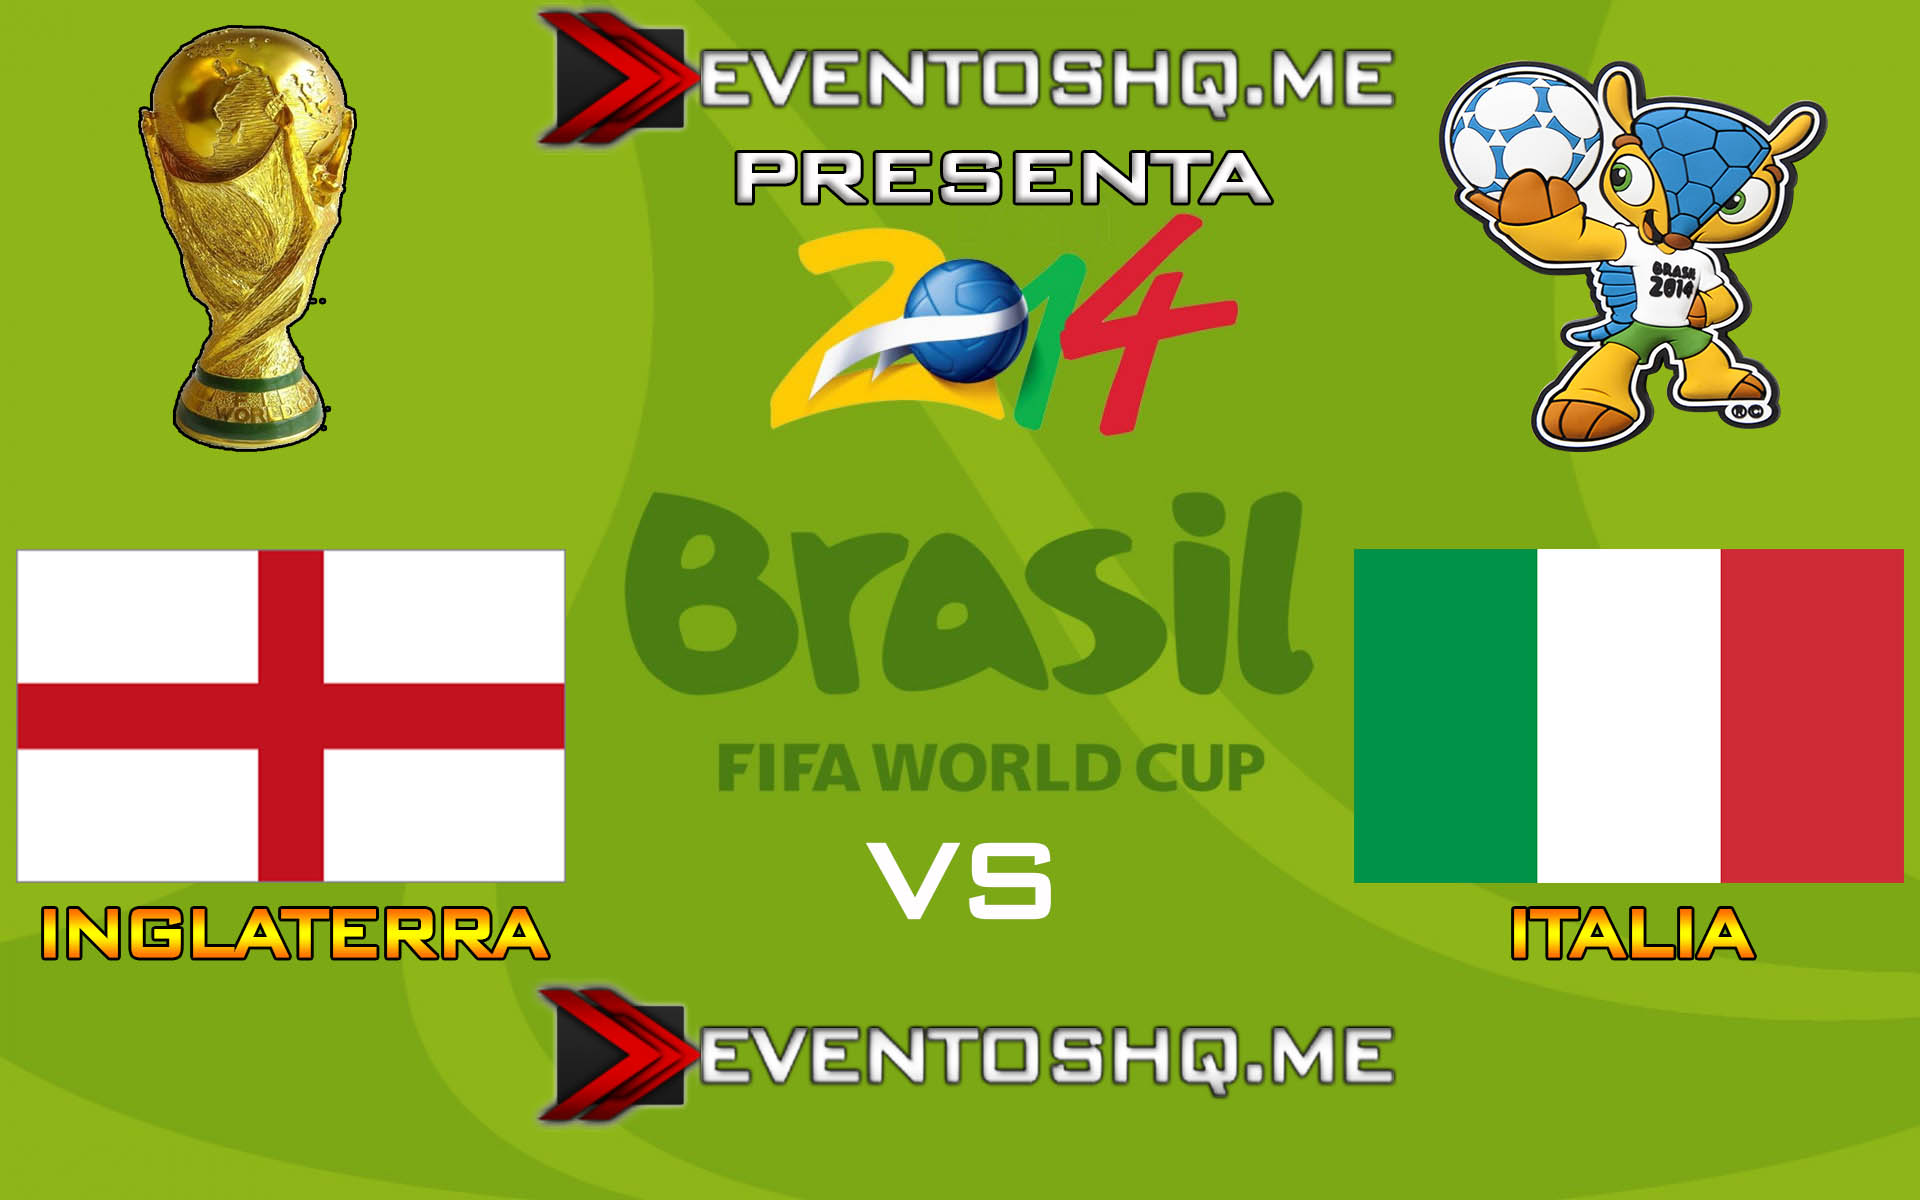 Ver en Vivo Inglaterra vs Italia Mundial Brasil 2014 www.eventoshq.me